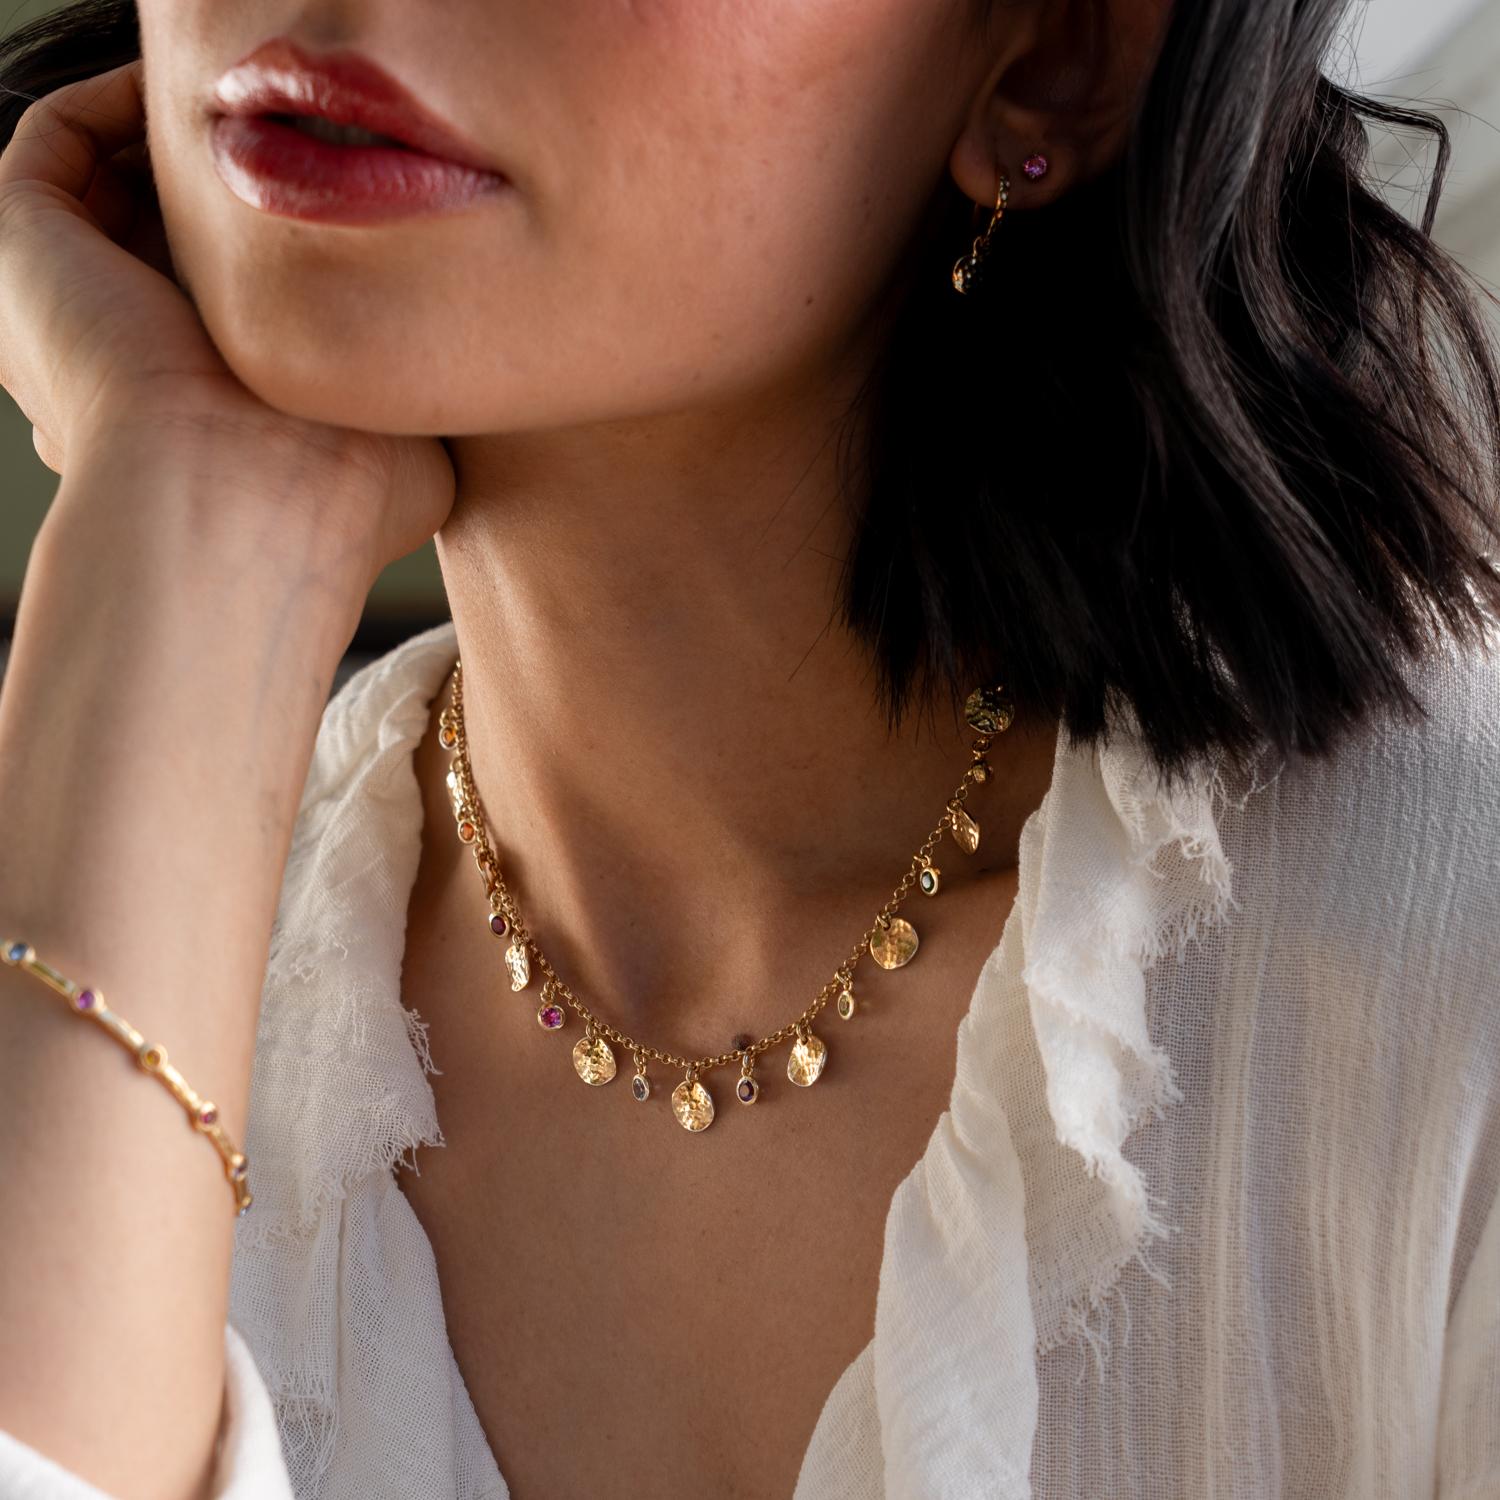 Eine moderne Interpretation traditioneller Opulenz: Diese Halskette aus Sterlingsilber vereint moderne gehämmerte Scheiben mit einem Regenbogen aus bunten Edelsteinen, die im Licht funkeln. Das Collier zeigt eine Reihe von strahlenden Edelsteinen,